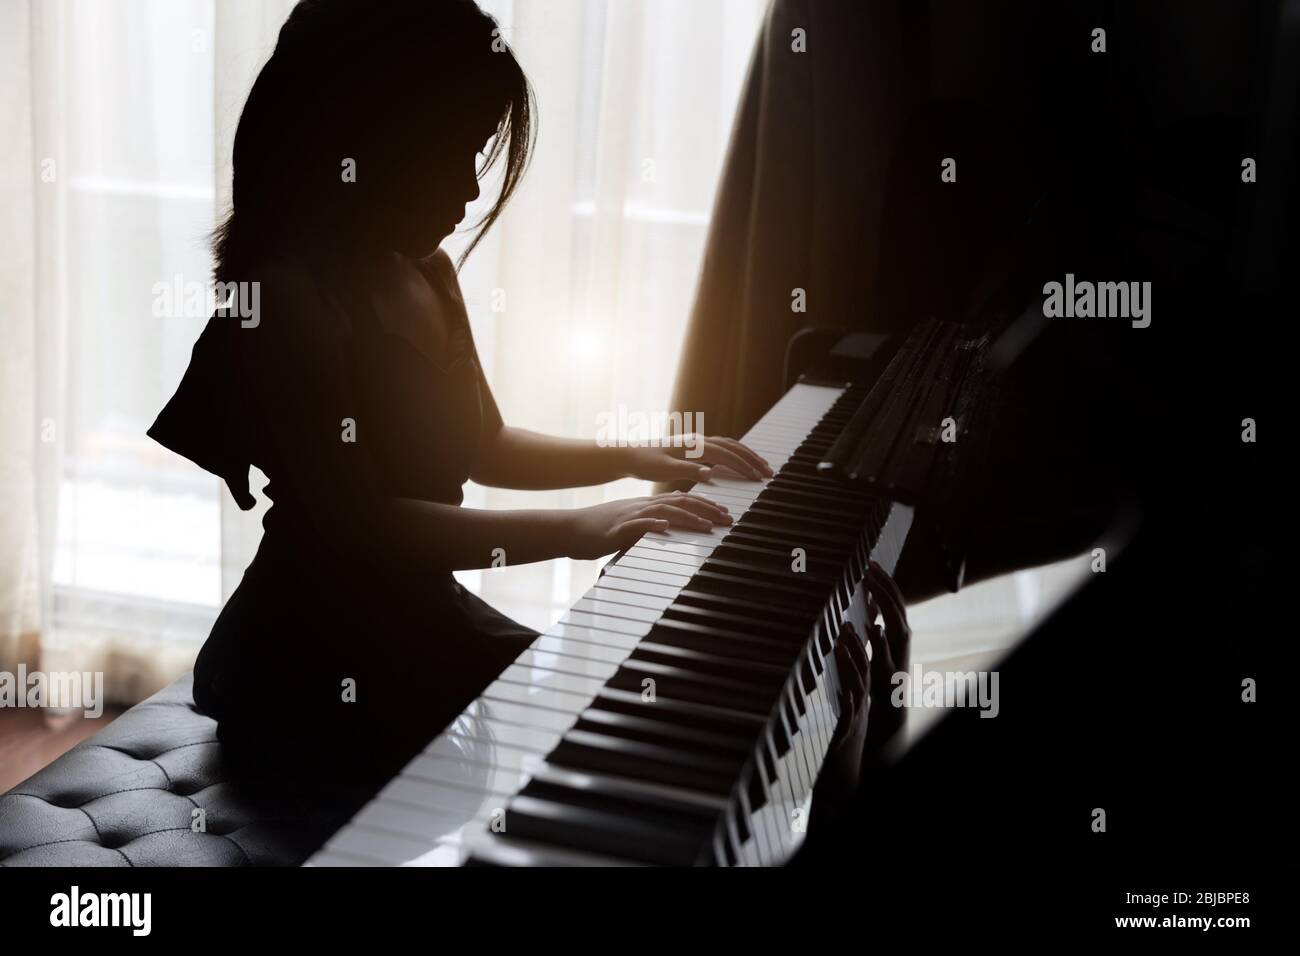 los niños de silhouette que juegan al piano tienen talento y práctica para aumentar la habilidad musical para la ocupación futura. Foto de stock